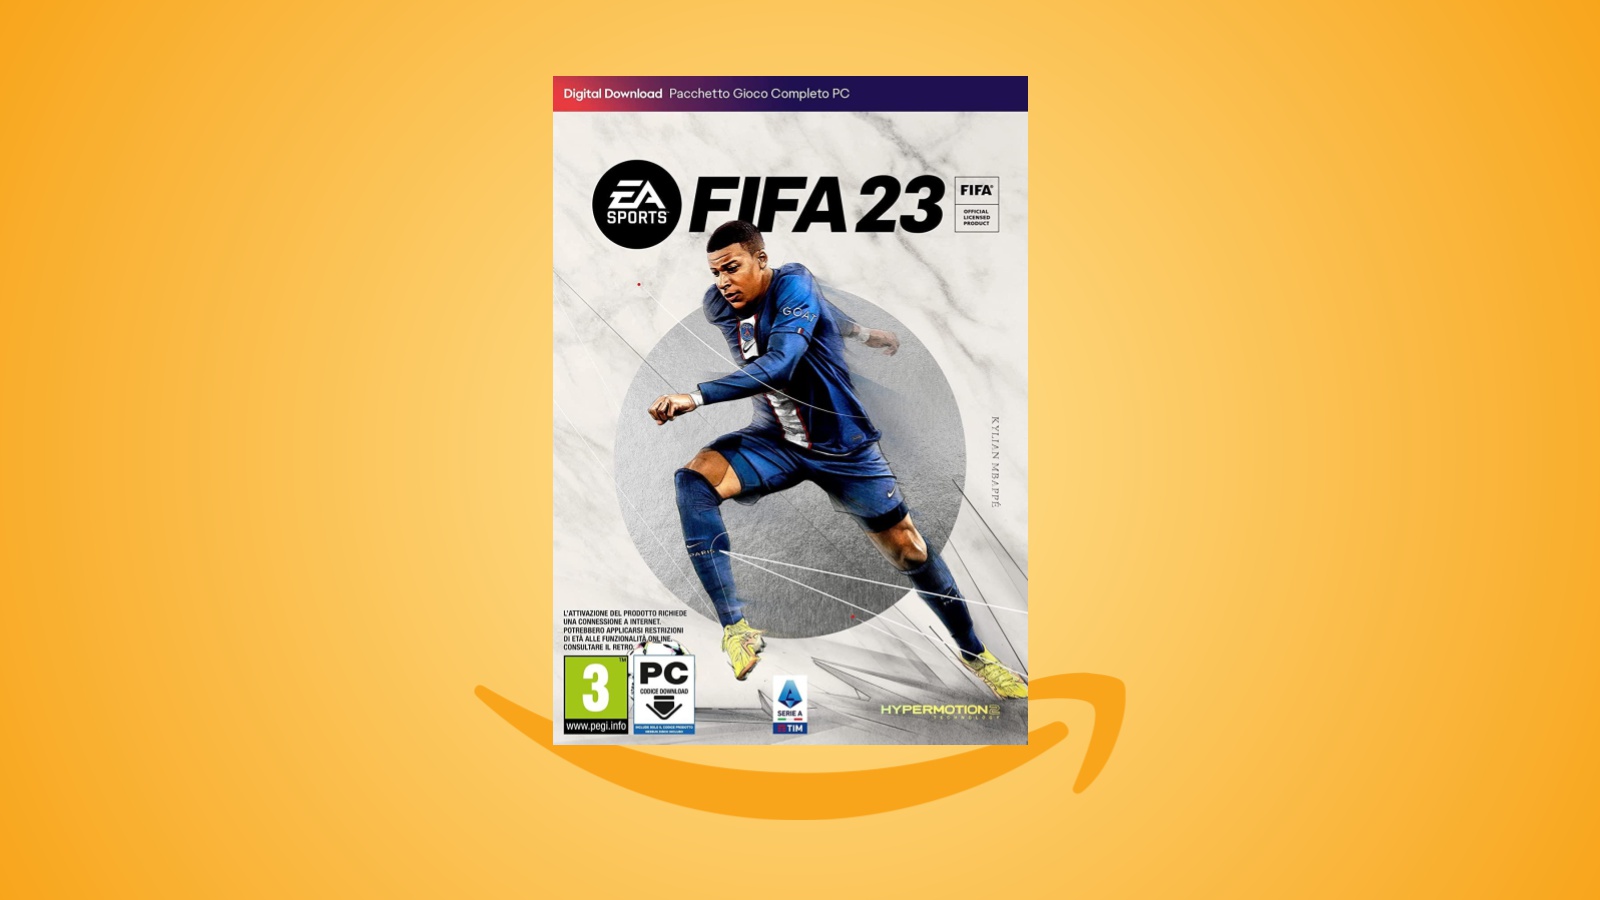 Offerte Amazon: FIFA 23 per PC in fortissimo sconto, al prezzo minimo storico